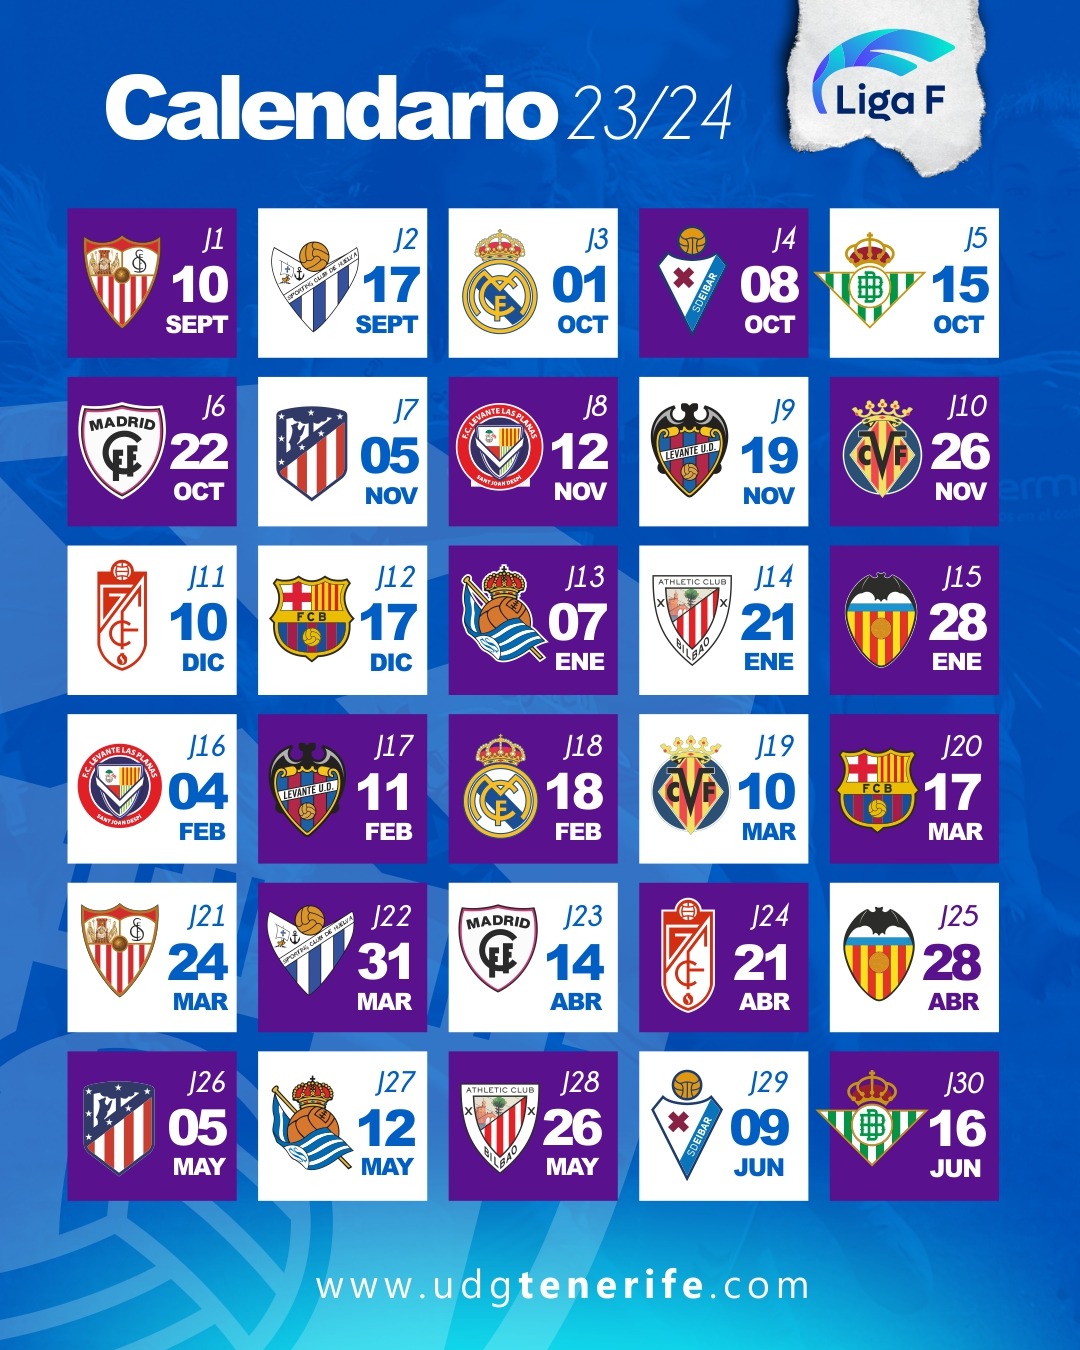 La UDG Tenerife ya conoce su calendario para la Liga F 23-24: arranca en Sevilla